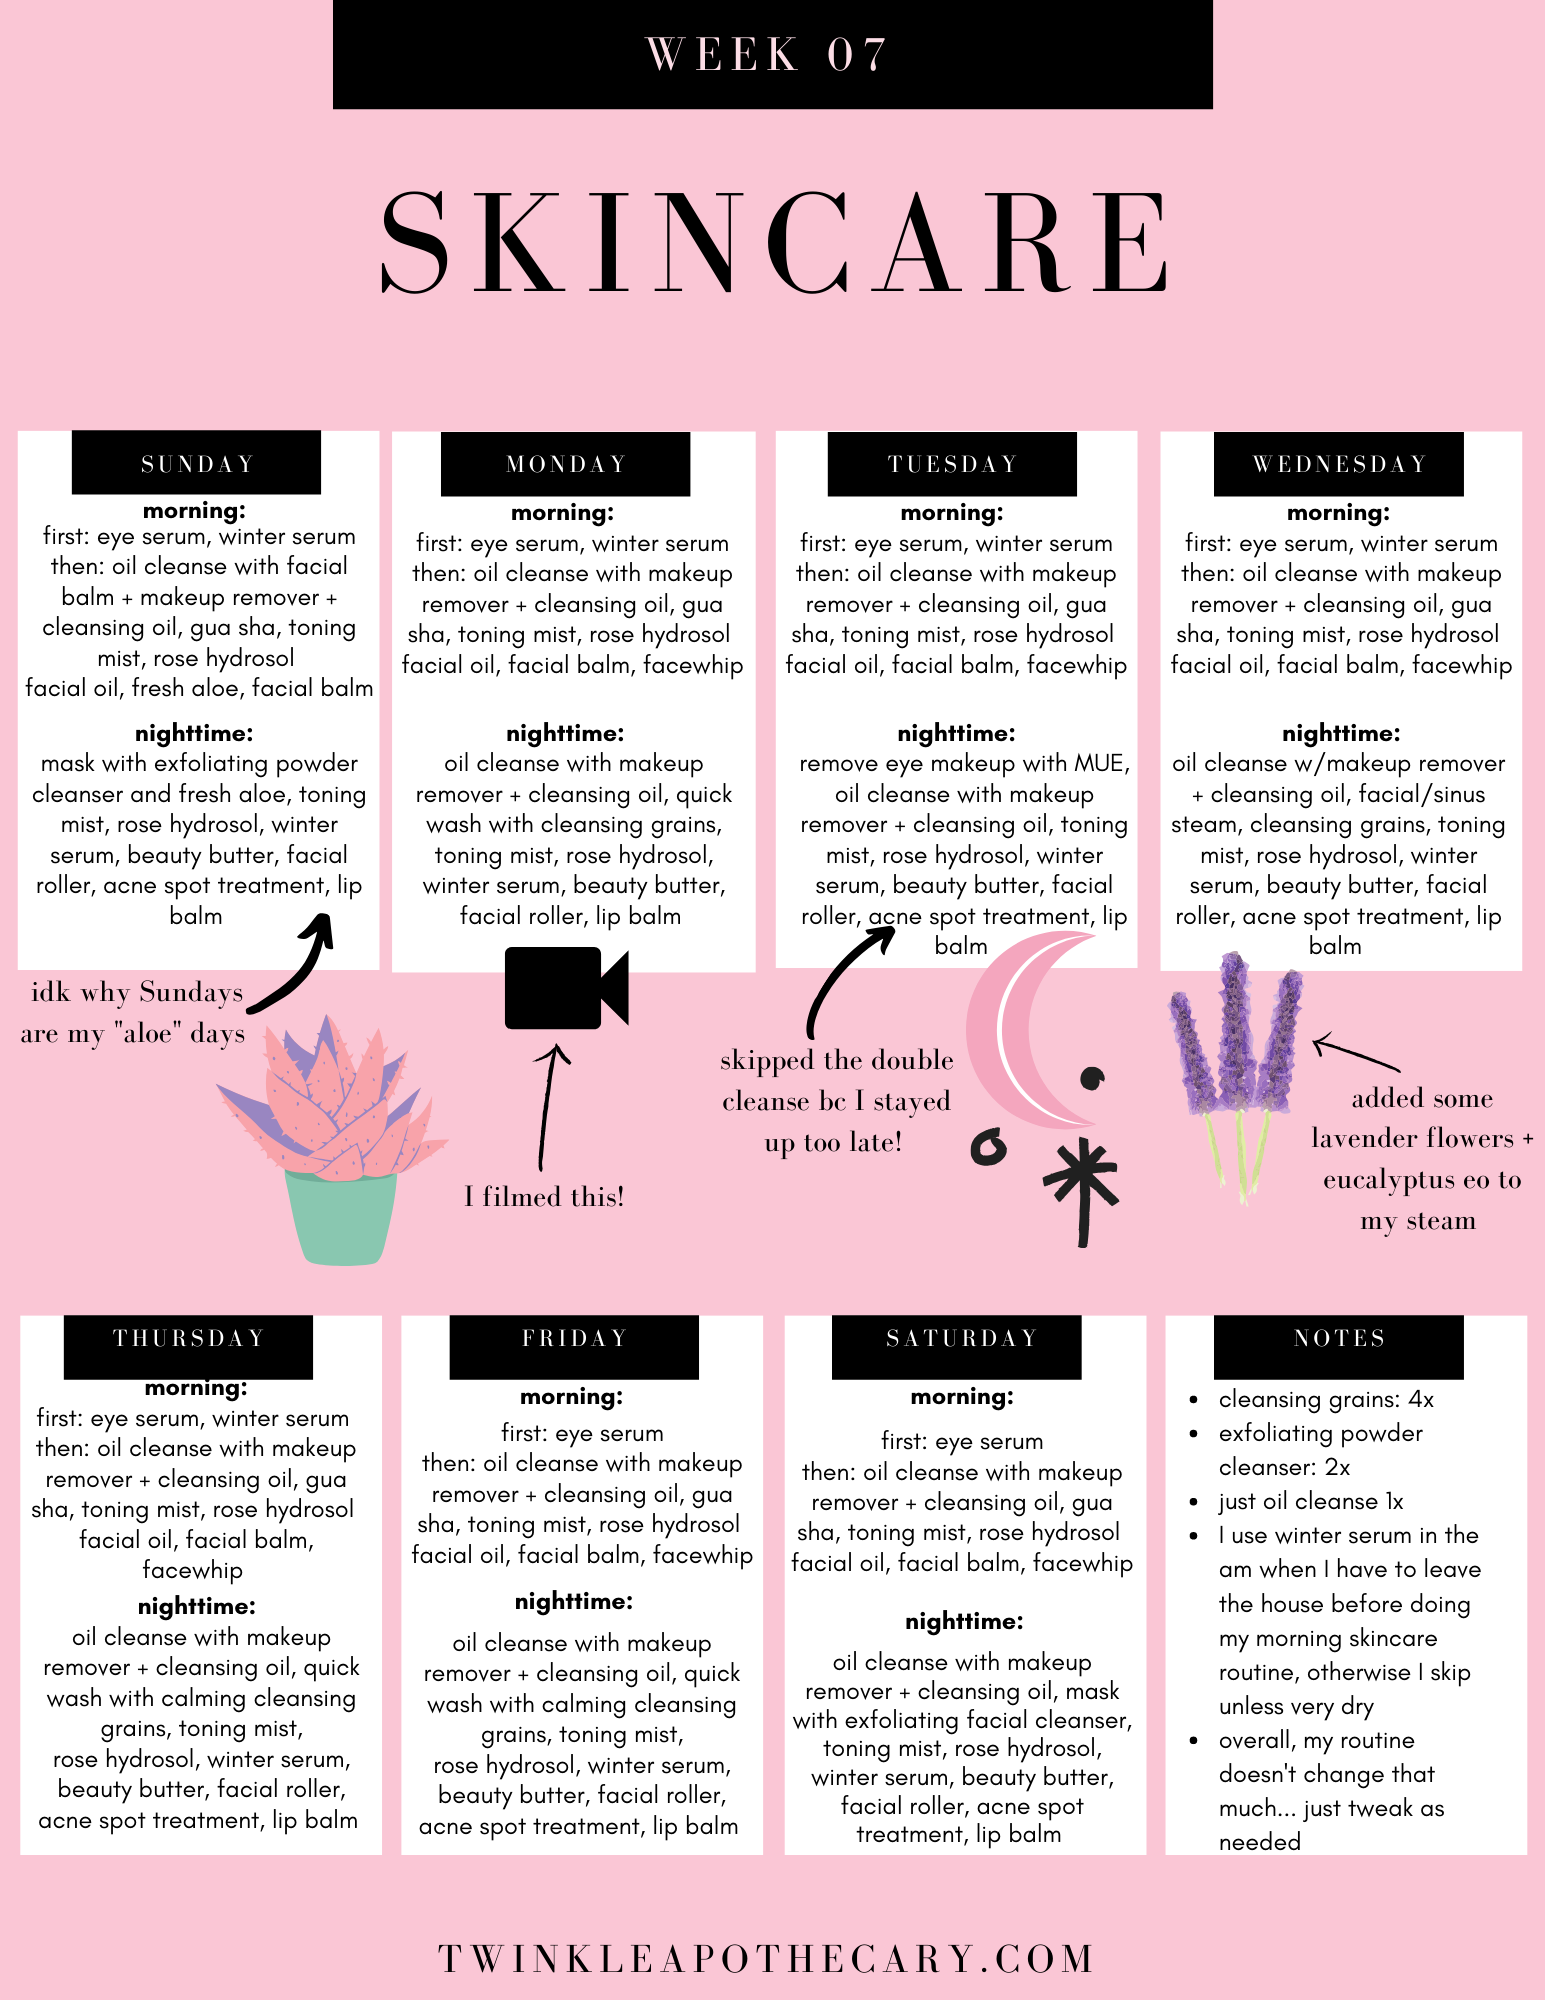 My Skincare Schedule - Week 7